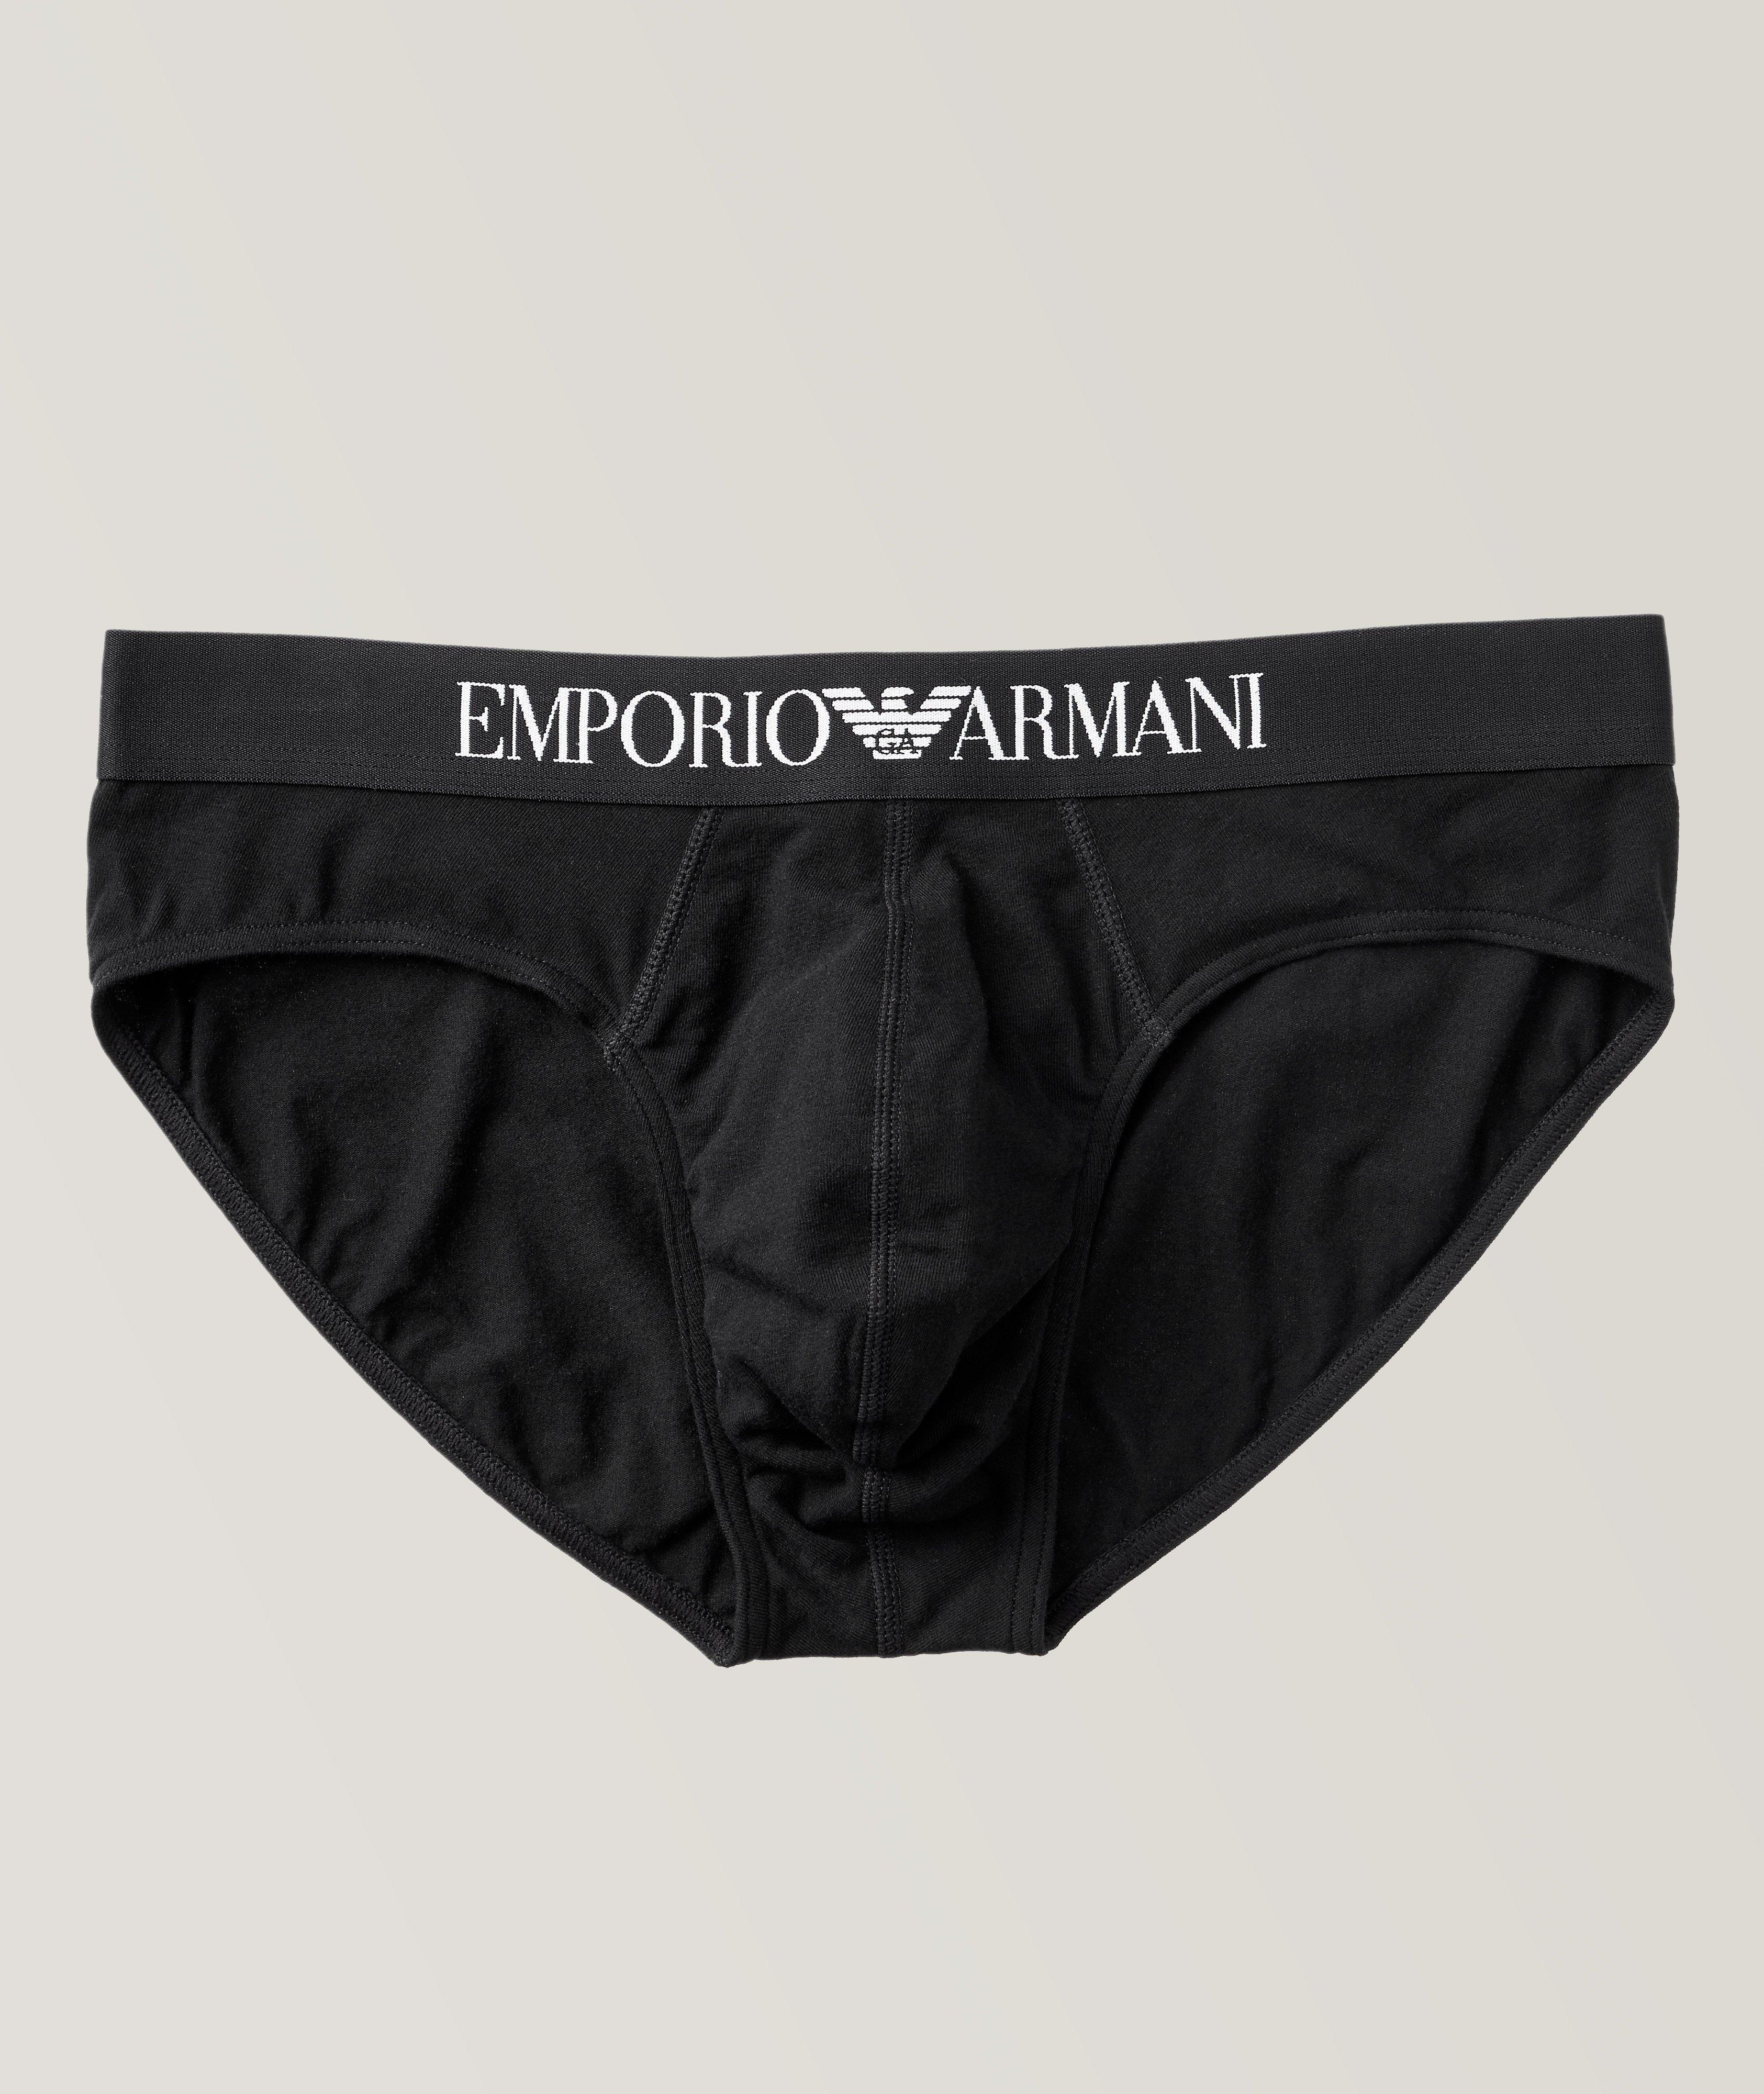 Emporio Armani Stretch-Cotton Briefs, Underwear